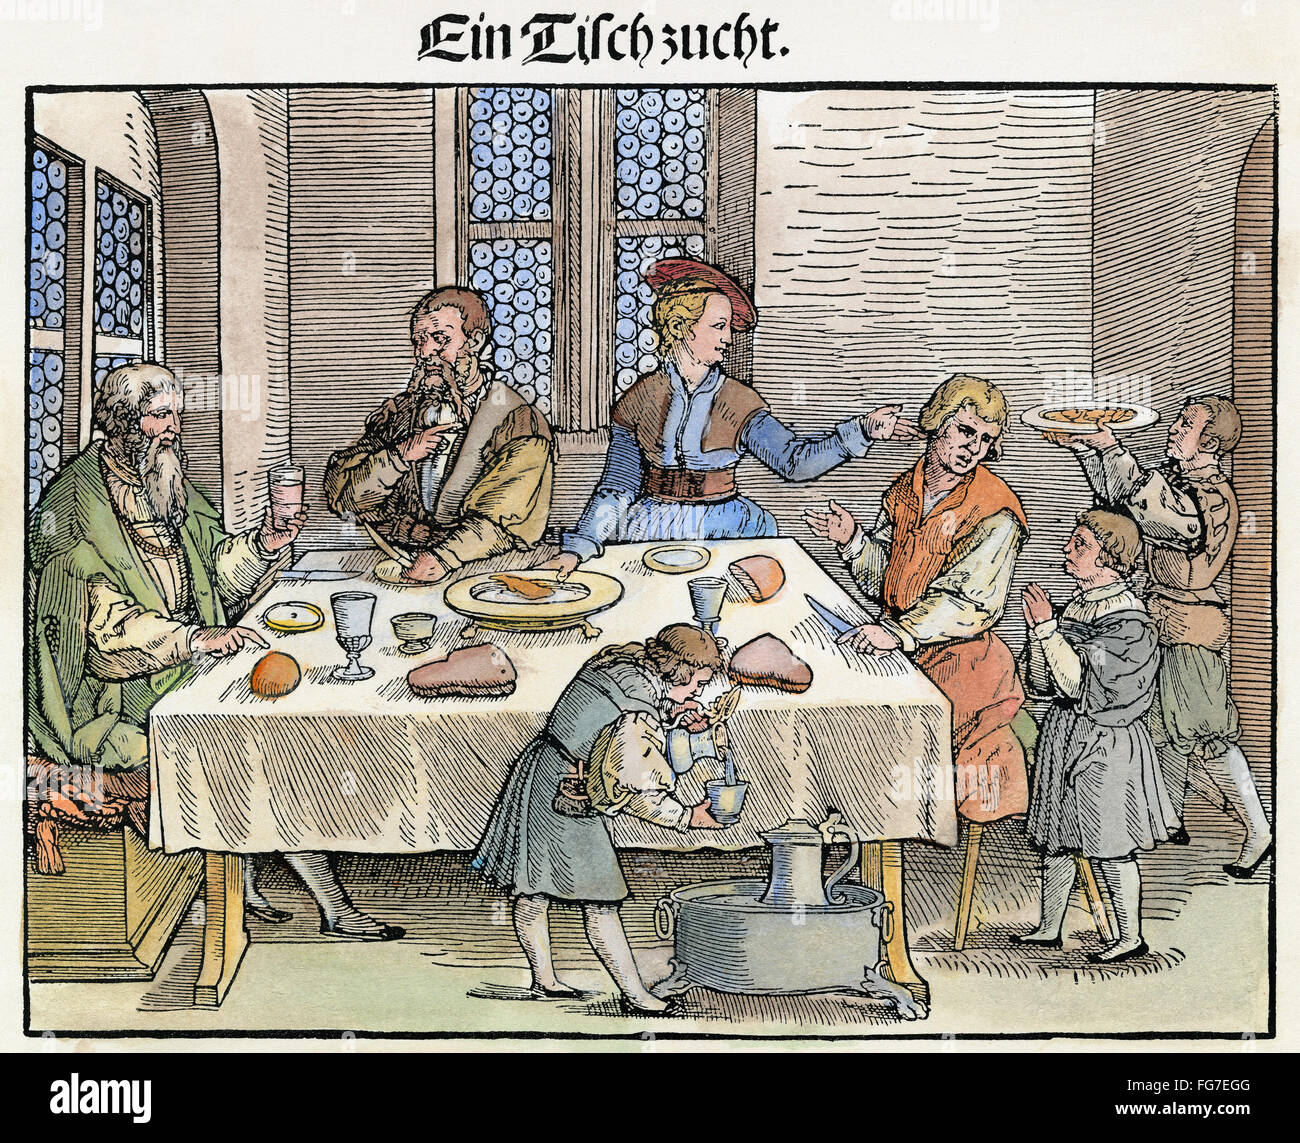 Tabella maniere, c1540. /N'Ein tischzucht.' una famiglia tedesca al tavolo per la cena. Xilografia da George Pencz, c1540. Foto Stock